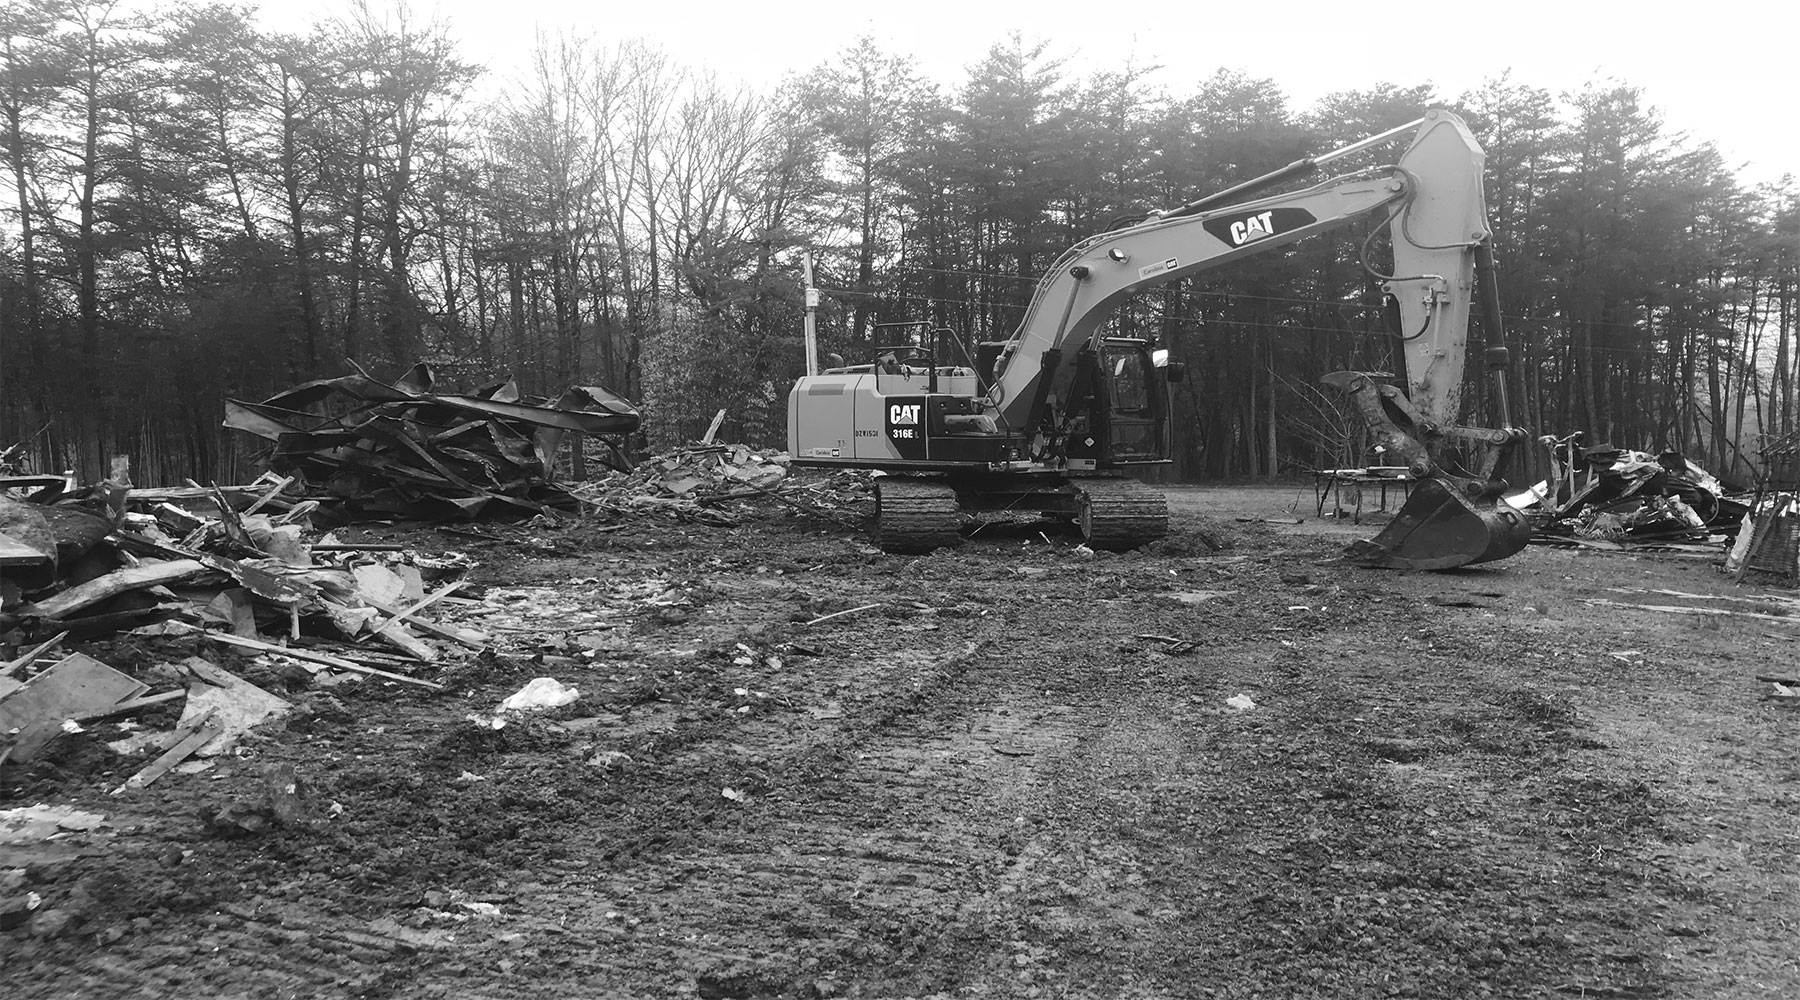 Demolition Services in North Carolina